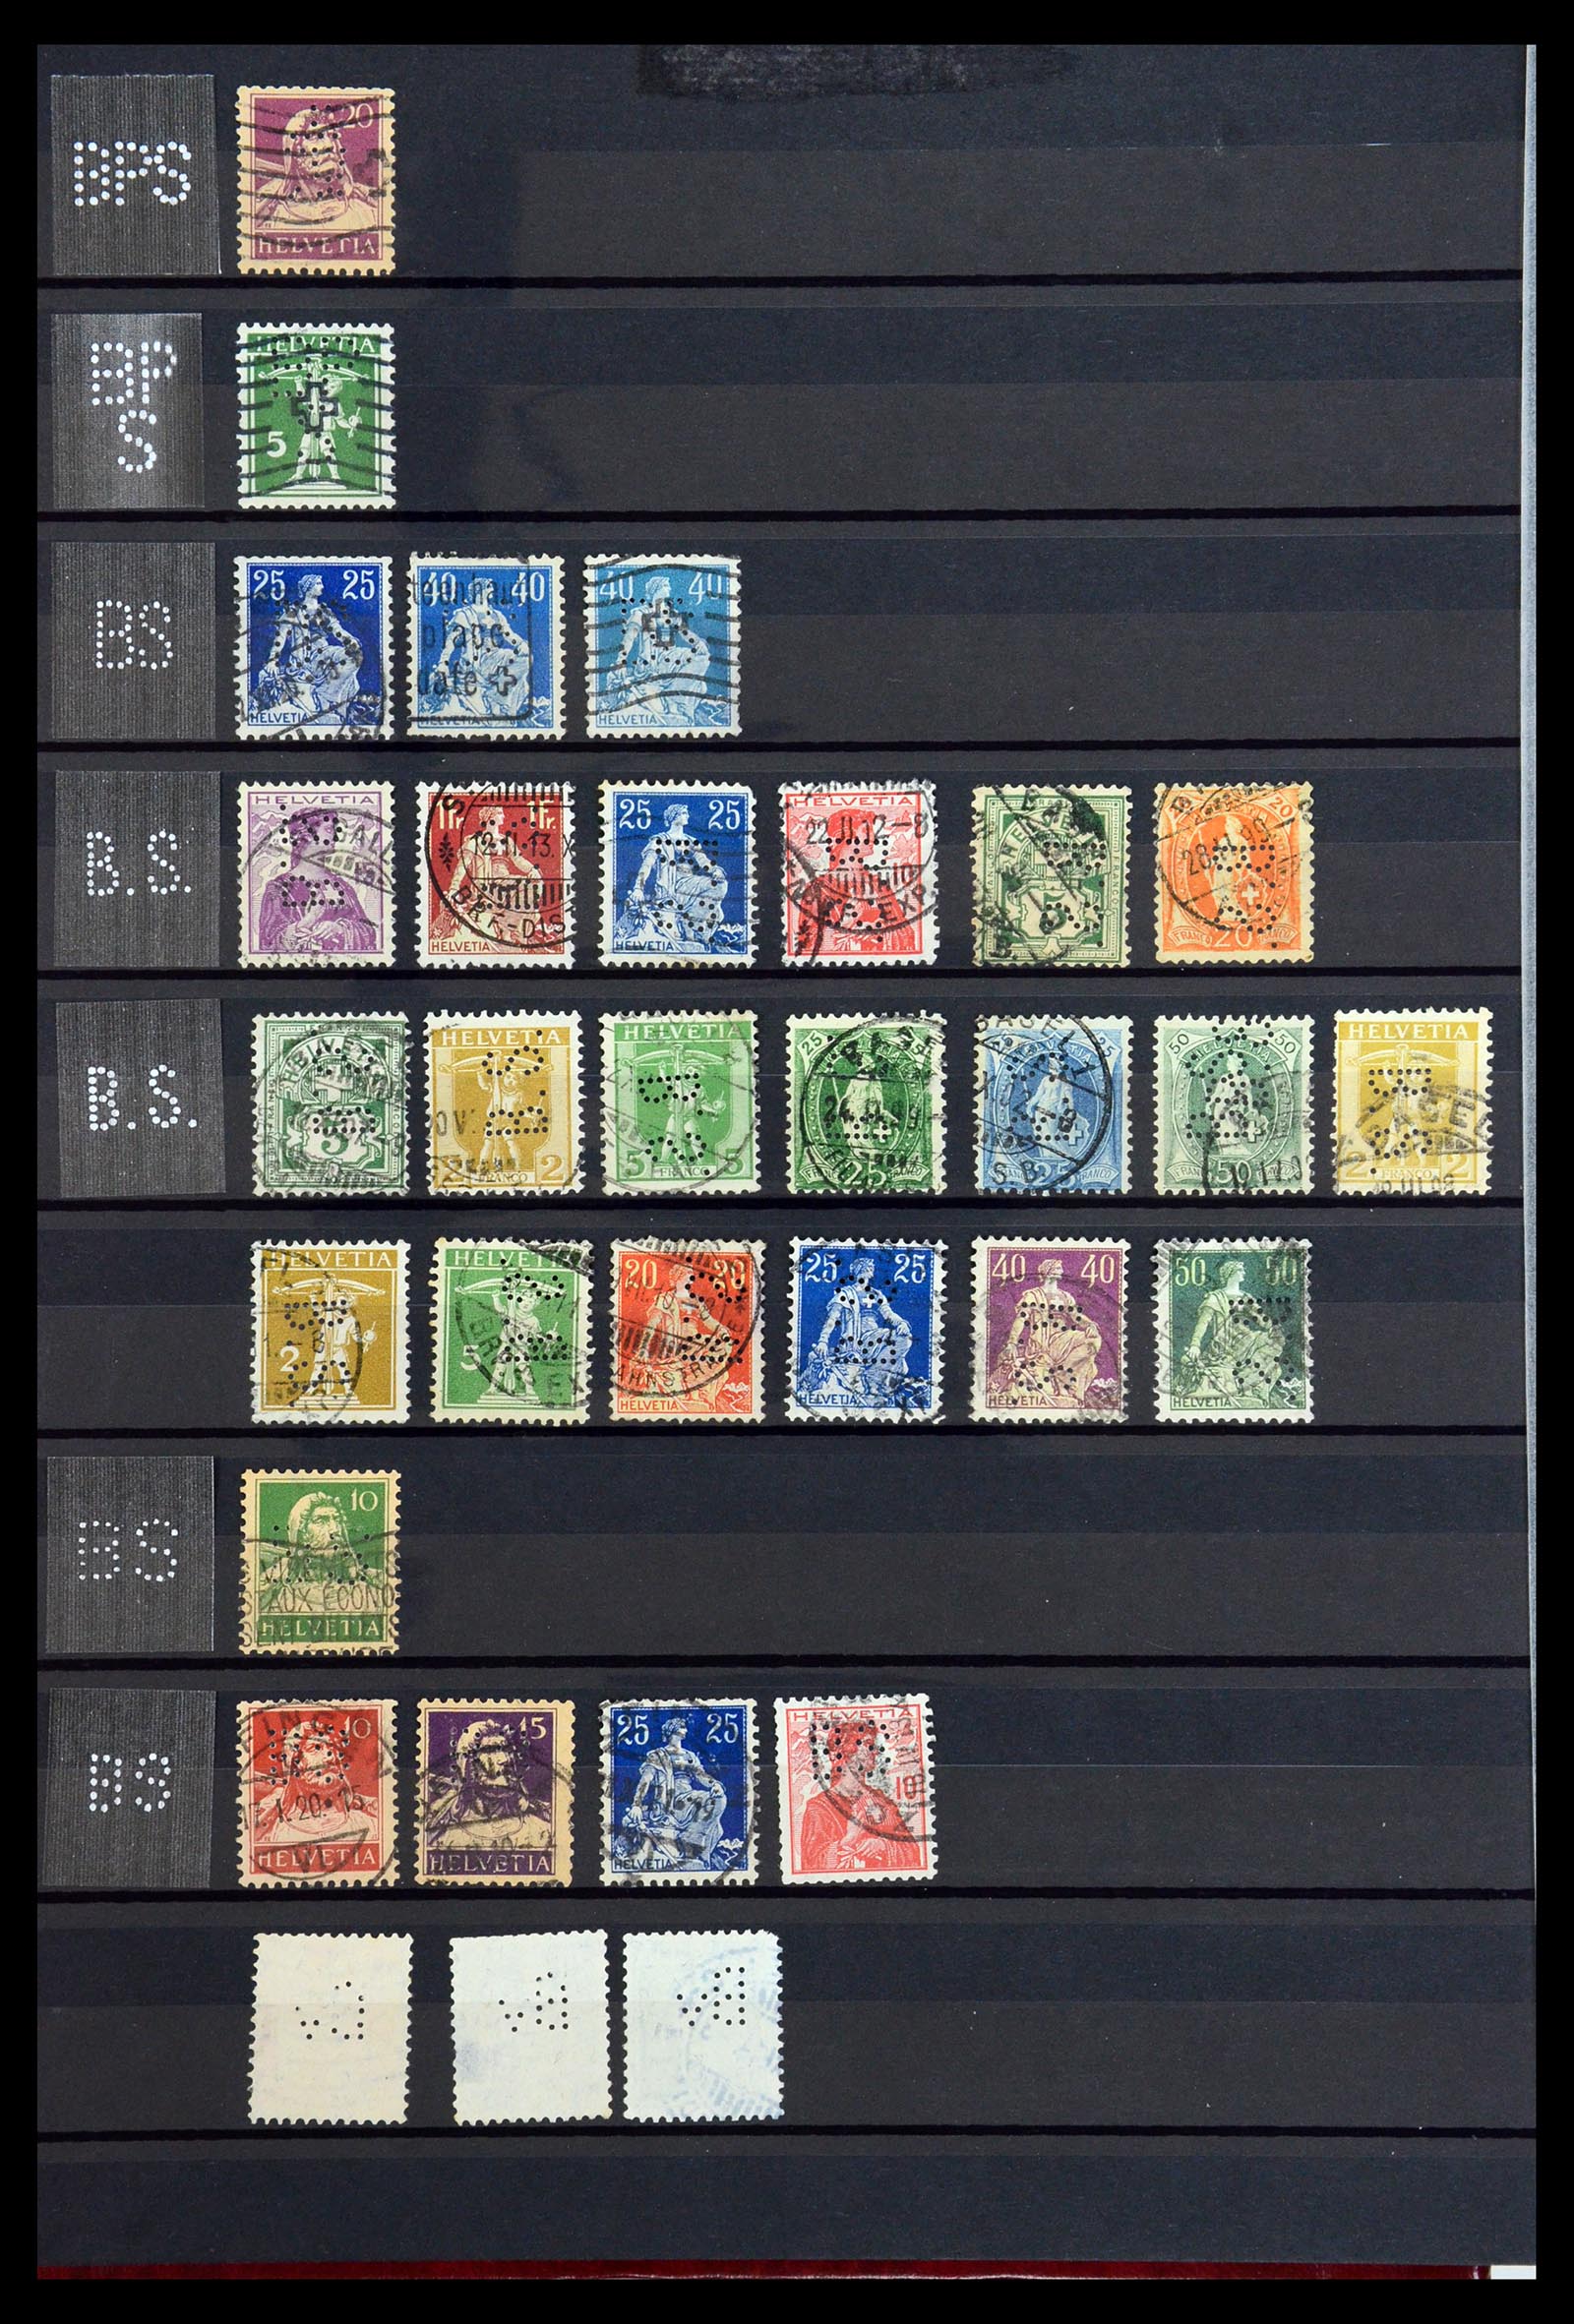 36372 006 - Stamp collection 36372 Switzerland perfins 1880-1960.